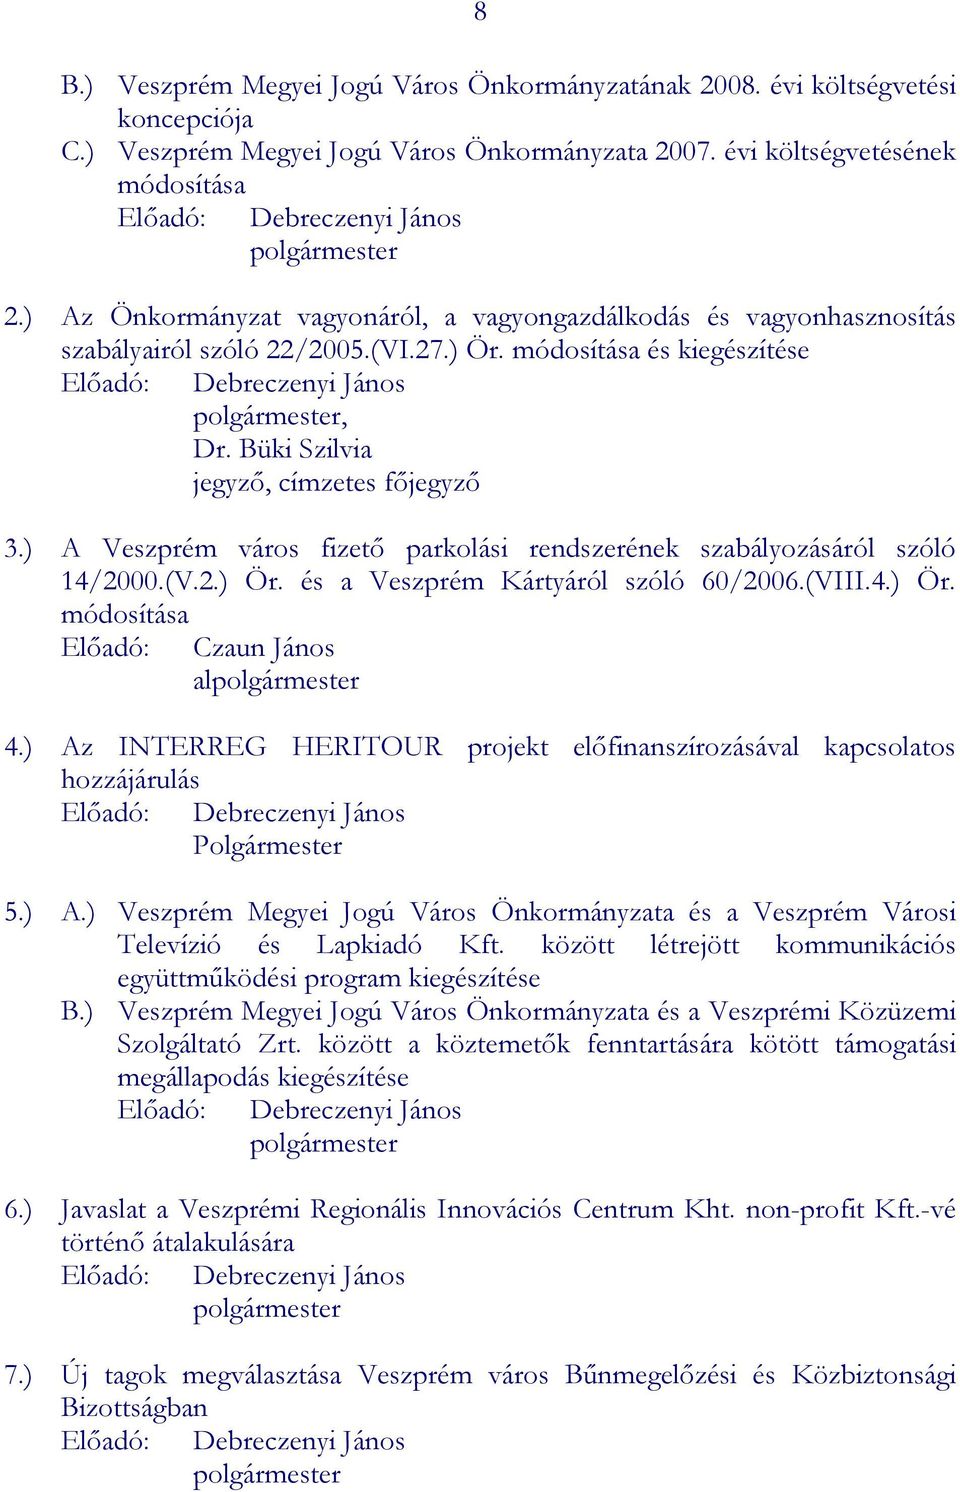 módosítása és kiegészítése Előadó: Debreczenyi János polgármester, Dr. Büki Szilvia jegyző, címzetes főjegyző 3.) A Veszprém város fizető parkolási rendszerének szabályozásáról szóló 14/2000.(V.2.) Ör.